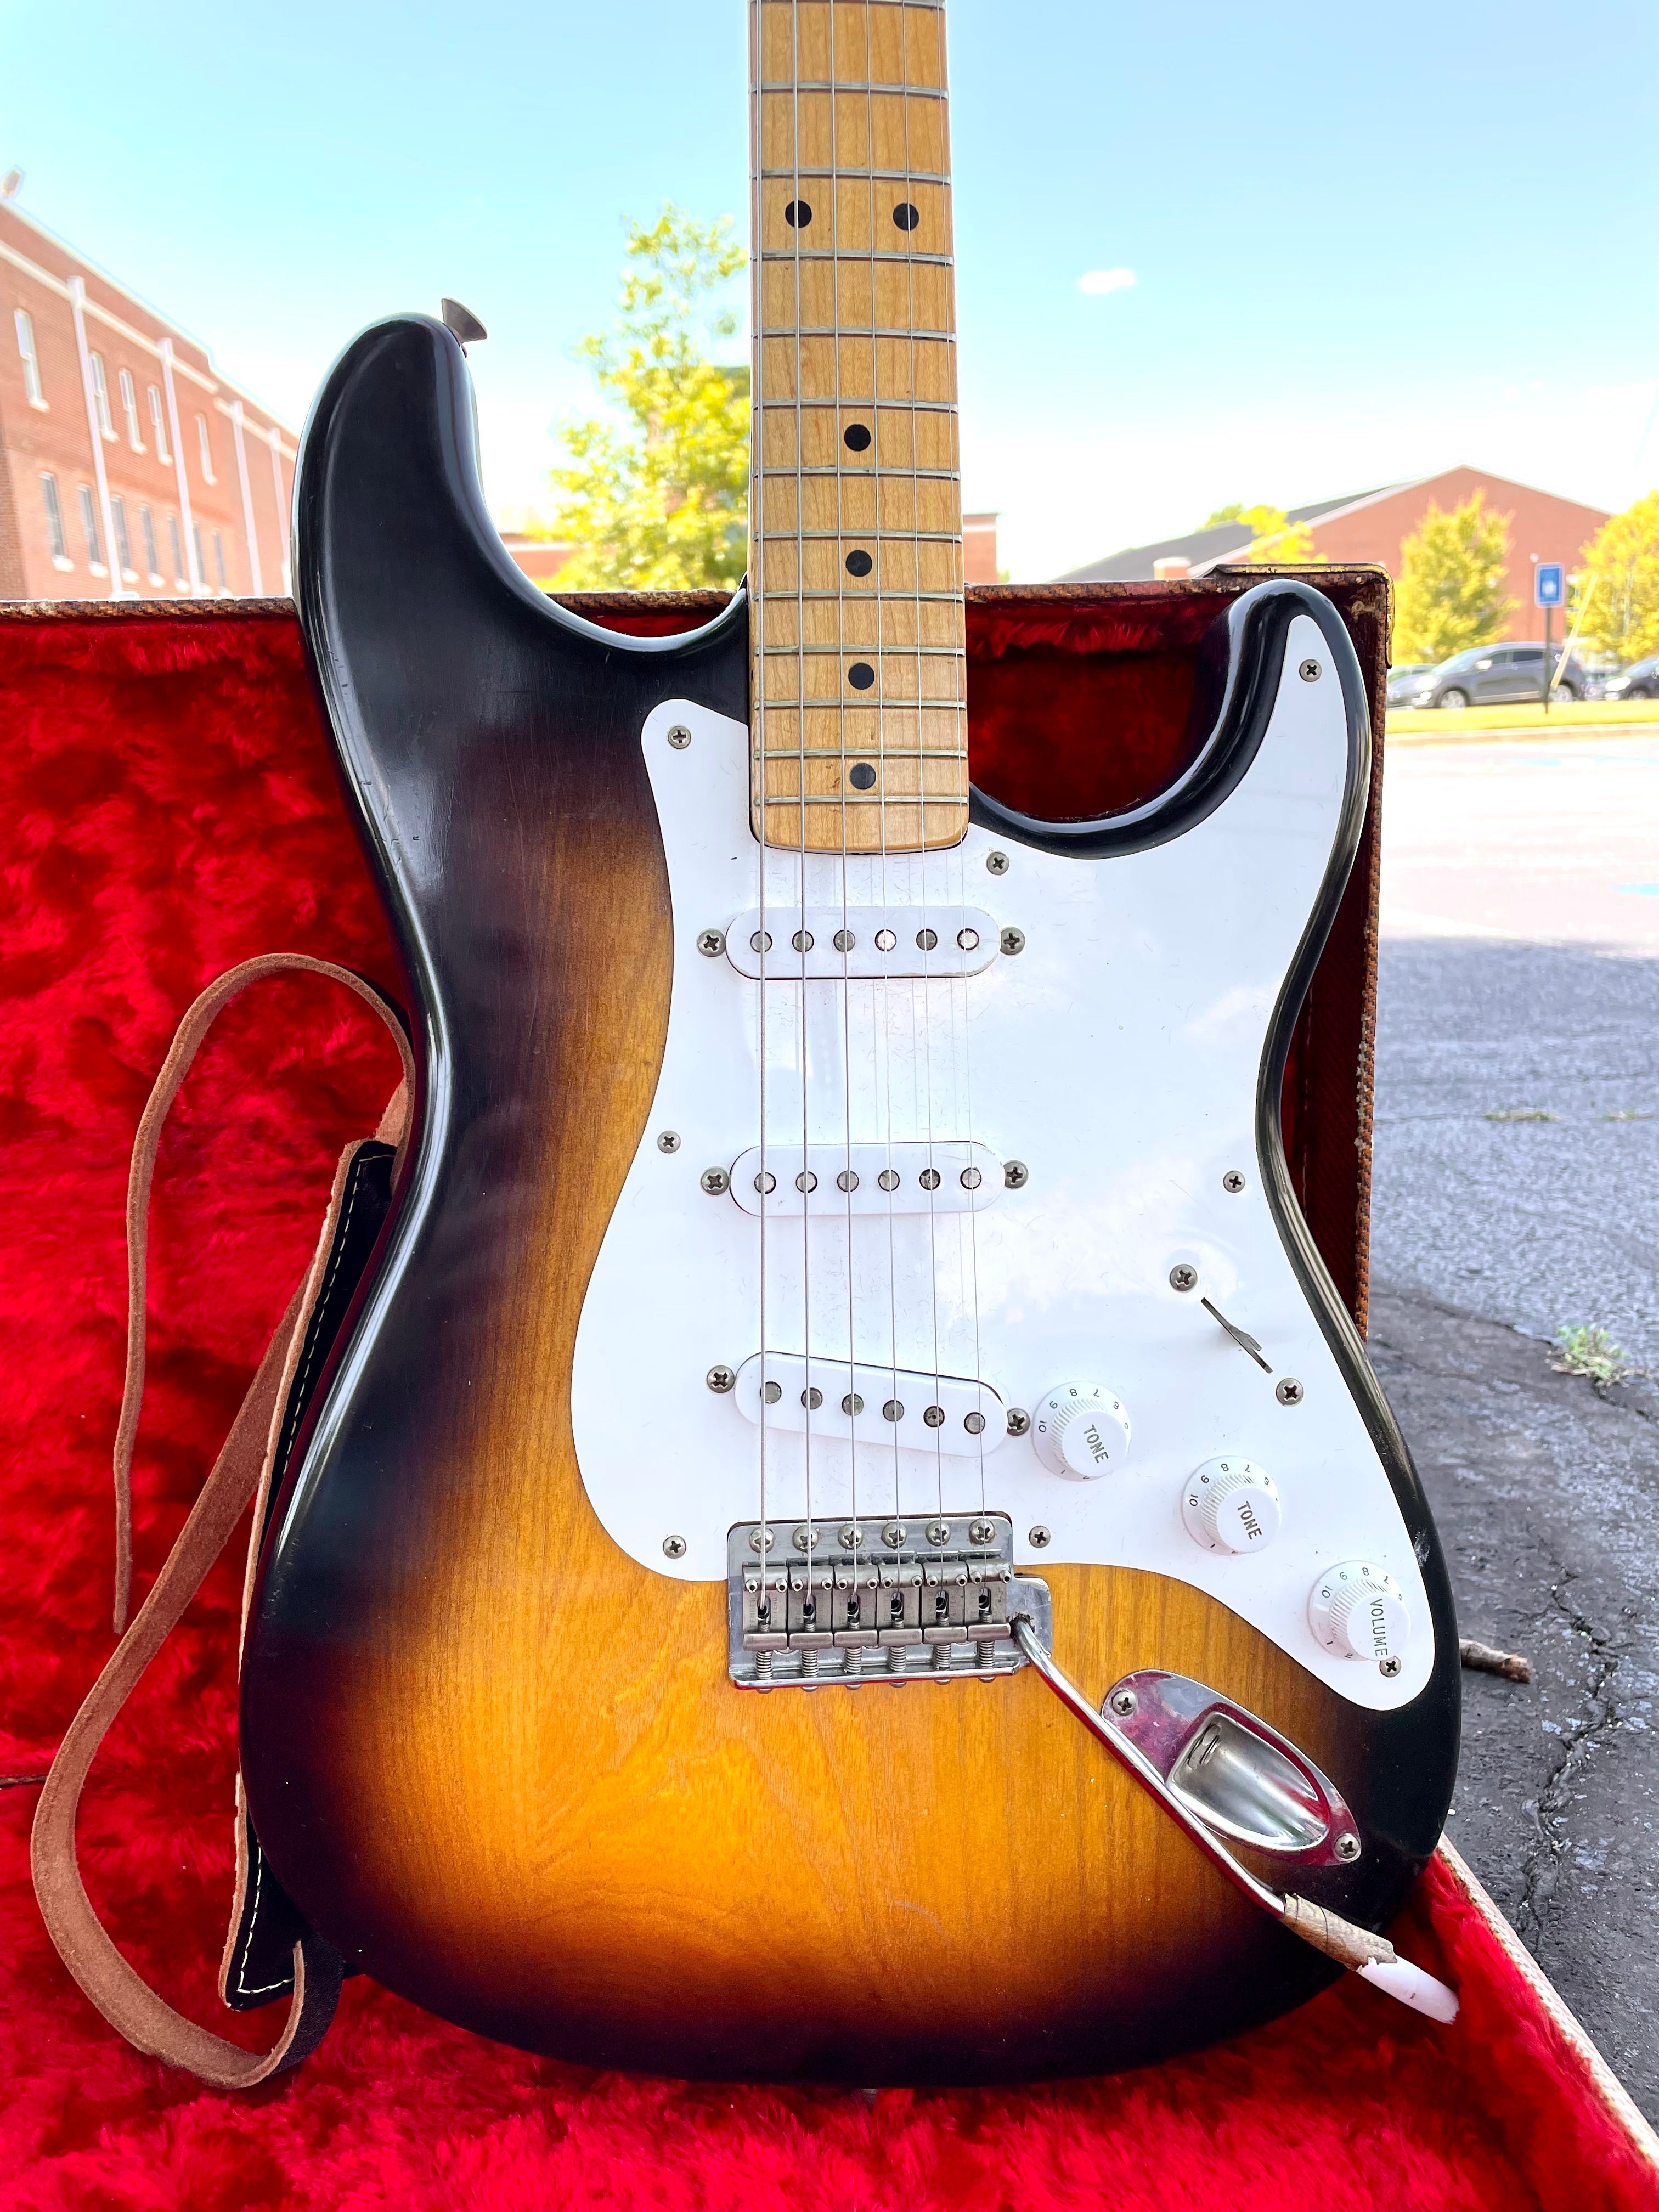 1954 Fender Stratocaster guitar